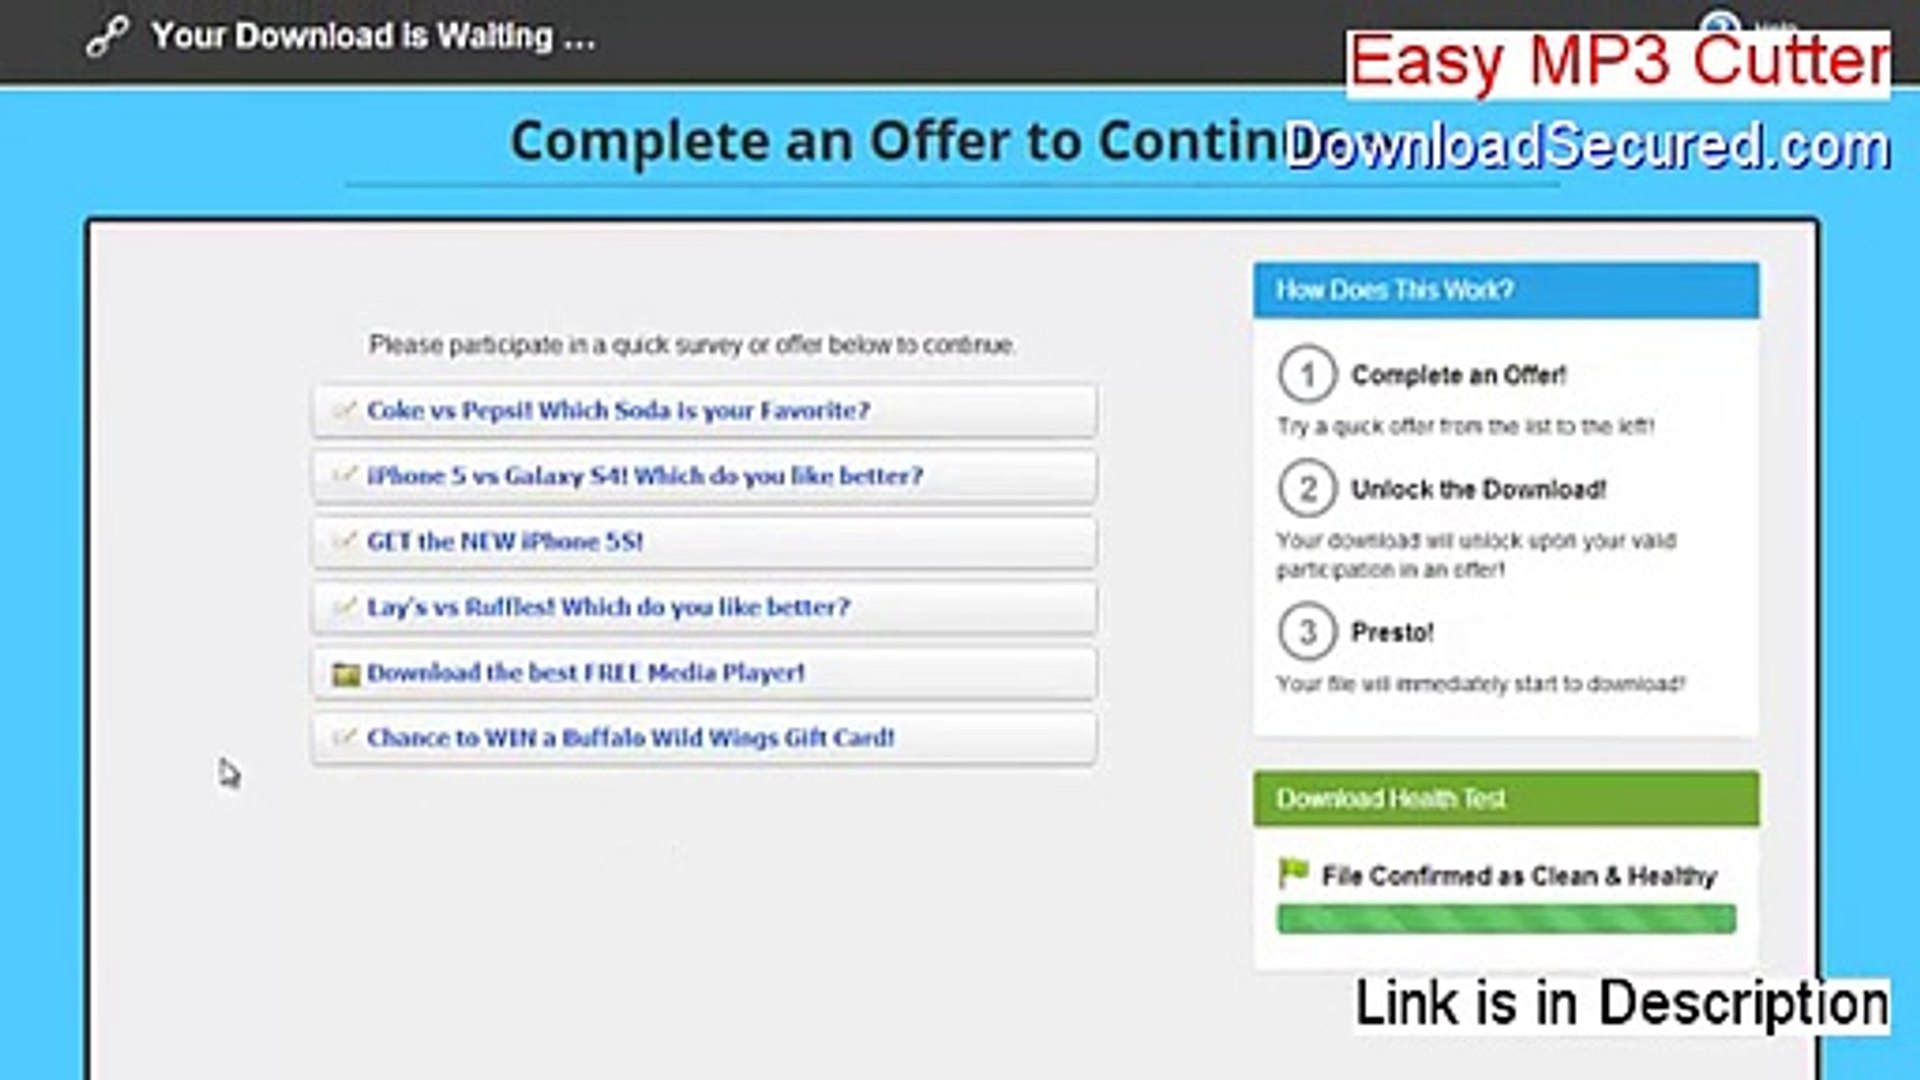 Easy MP3 Cutter Keygen - Legit Download 2015 - video Dailymotion